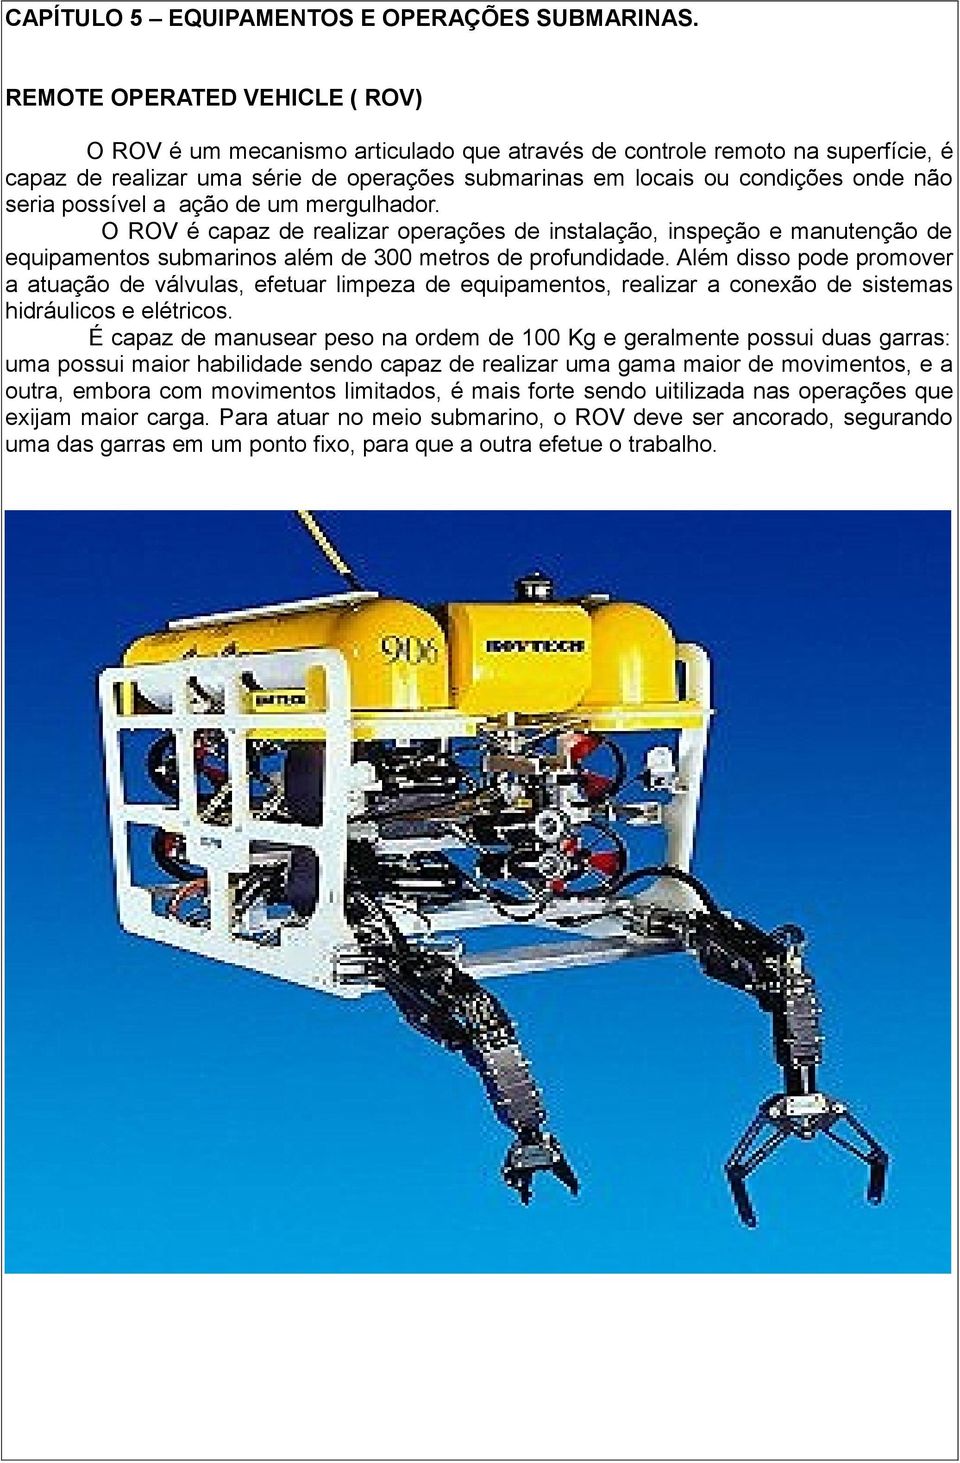 seria possível a ação de um mergulhador. O ROV é capaz de realizar operações de instalação, inspeção e manutenção de equipamentos submarinos além de 300 metros de profundidade.